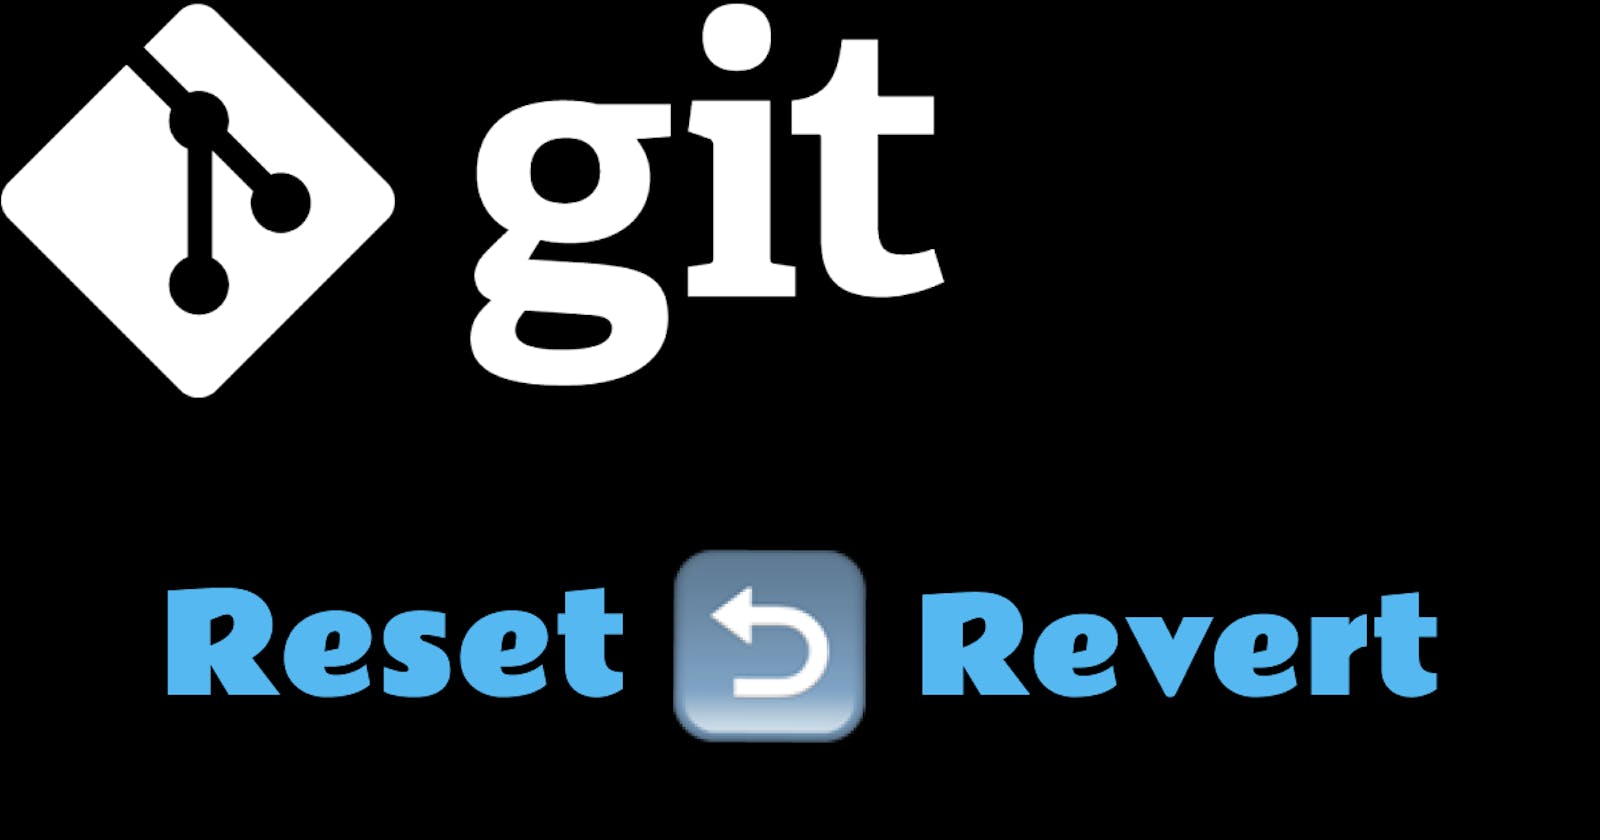 Git Reset vs. Revert